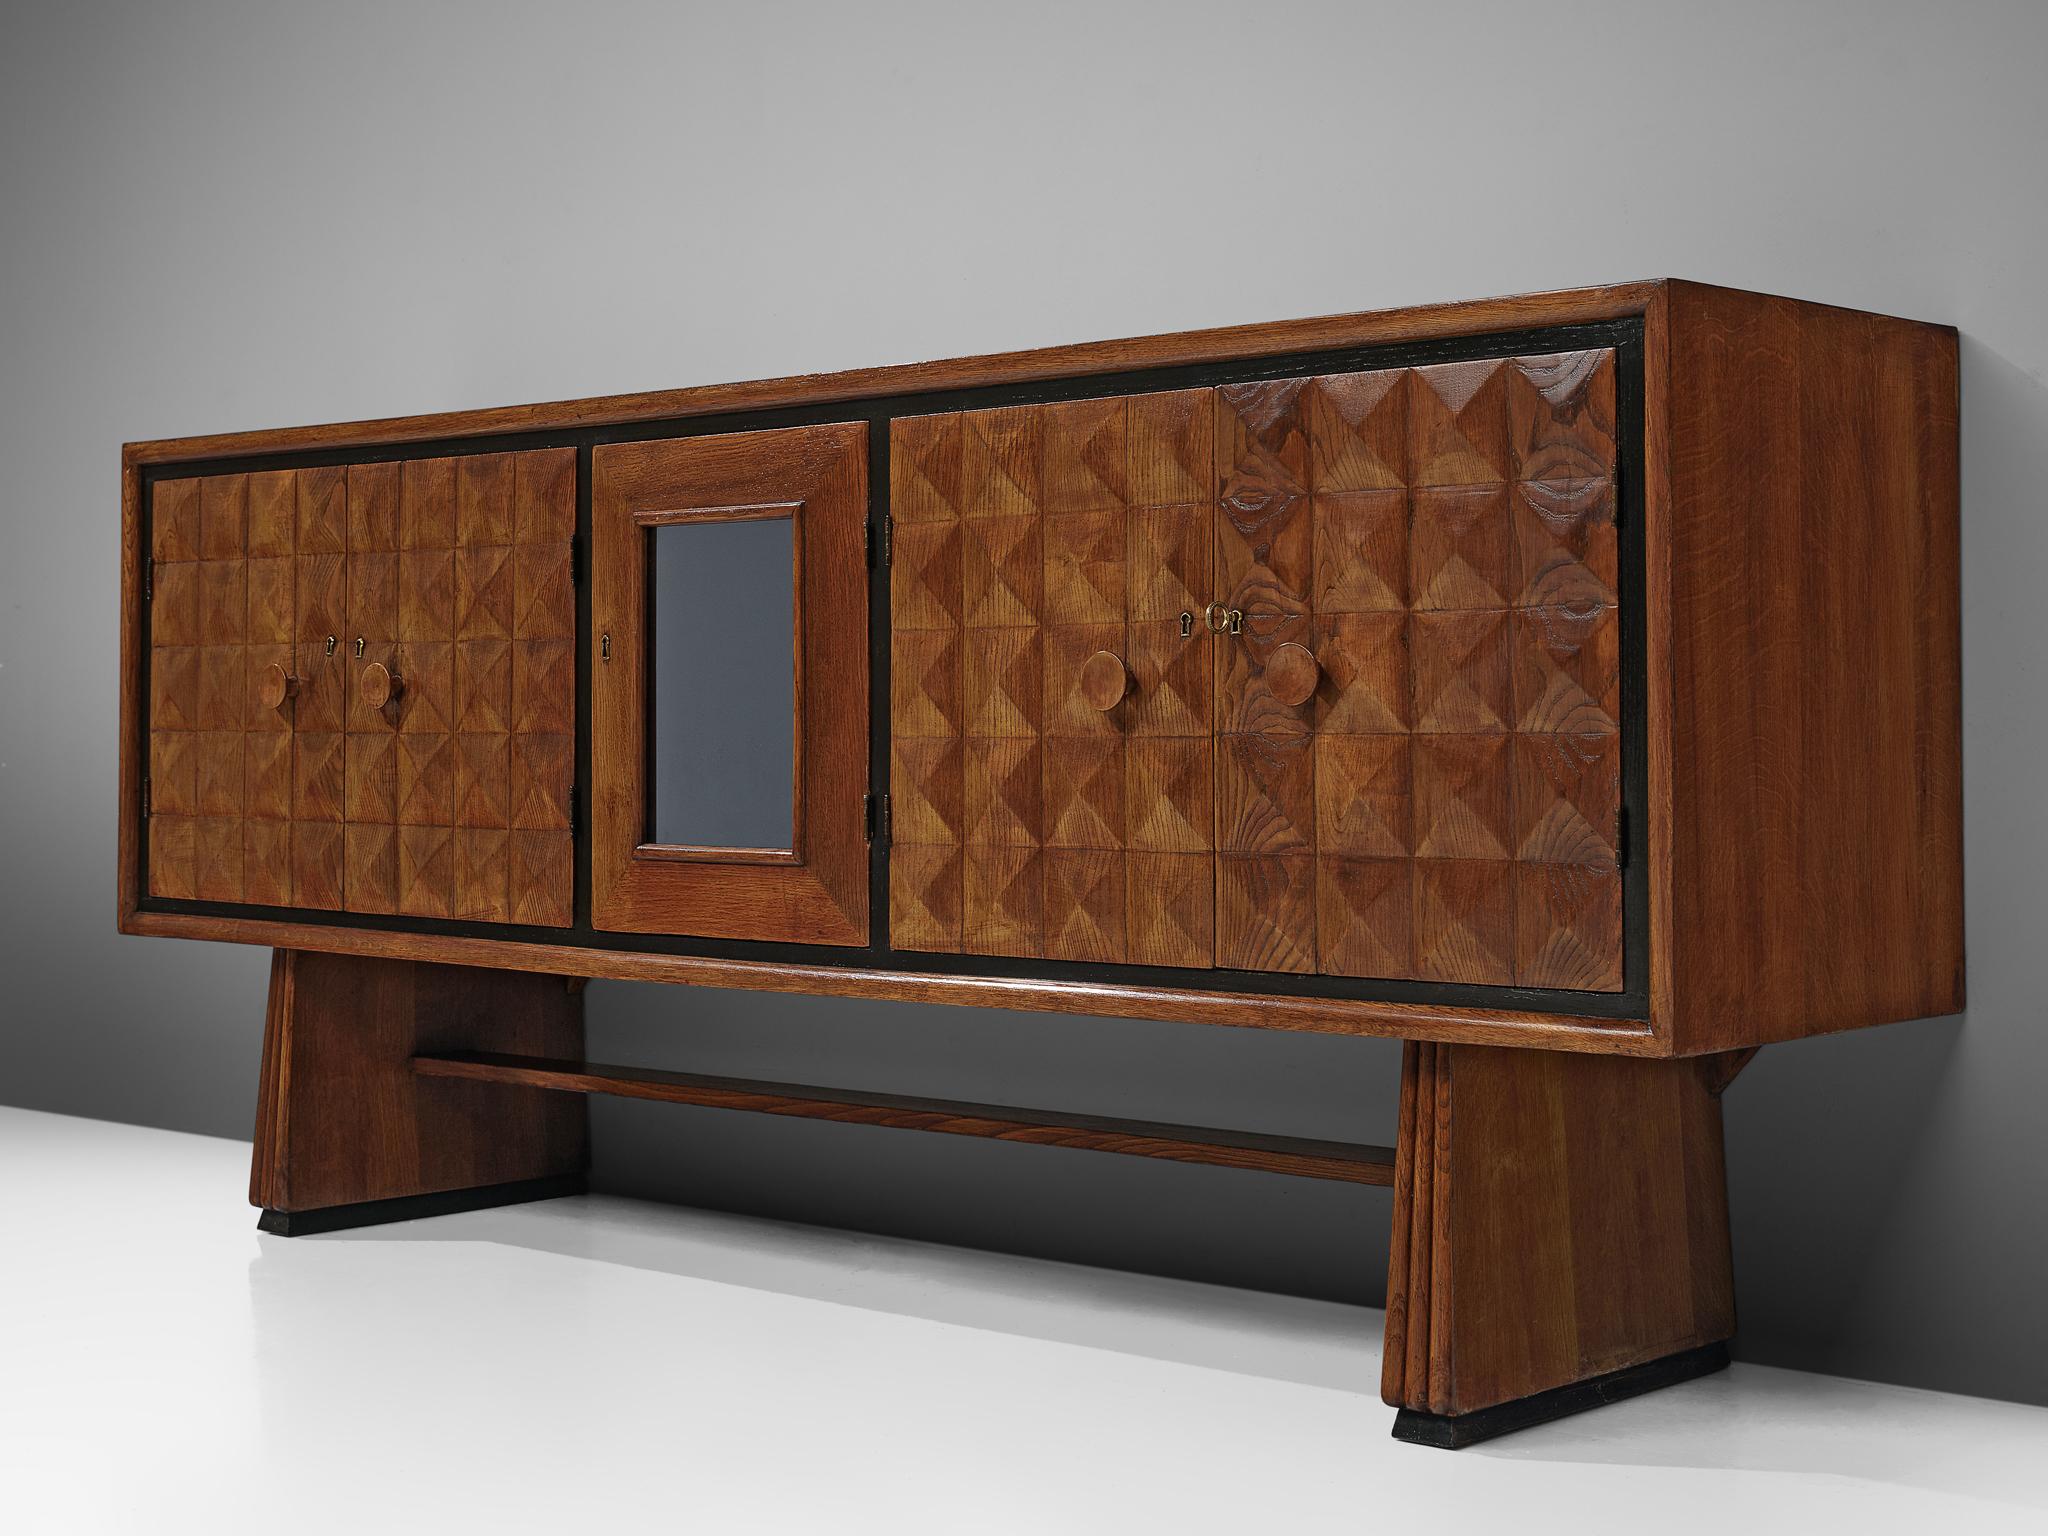 Italian Art Deco Sideboard with Diamond-Shaped Doors in Oak 1